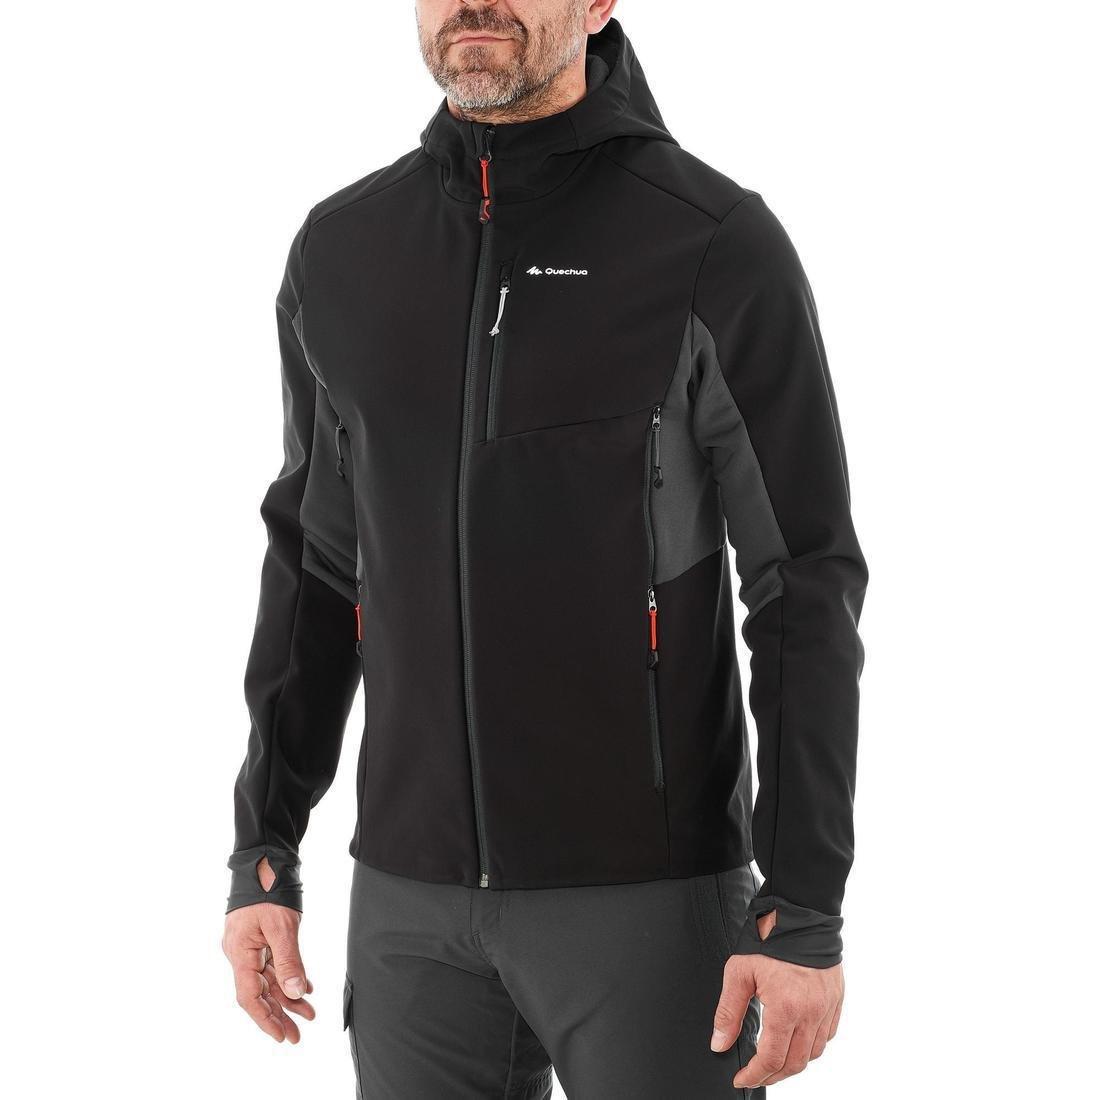 Windbreaker jacket - softshell - warm - MT500 - women’s - XS By FORCLAZ | Decathlon